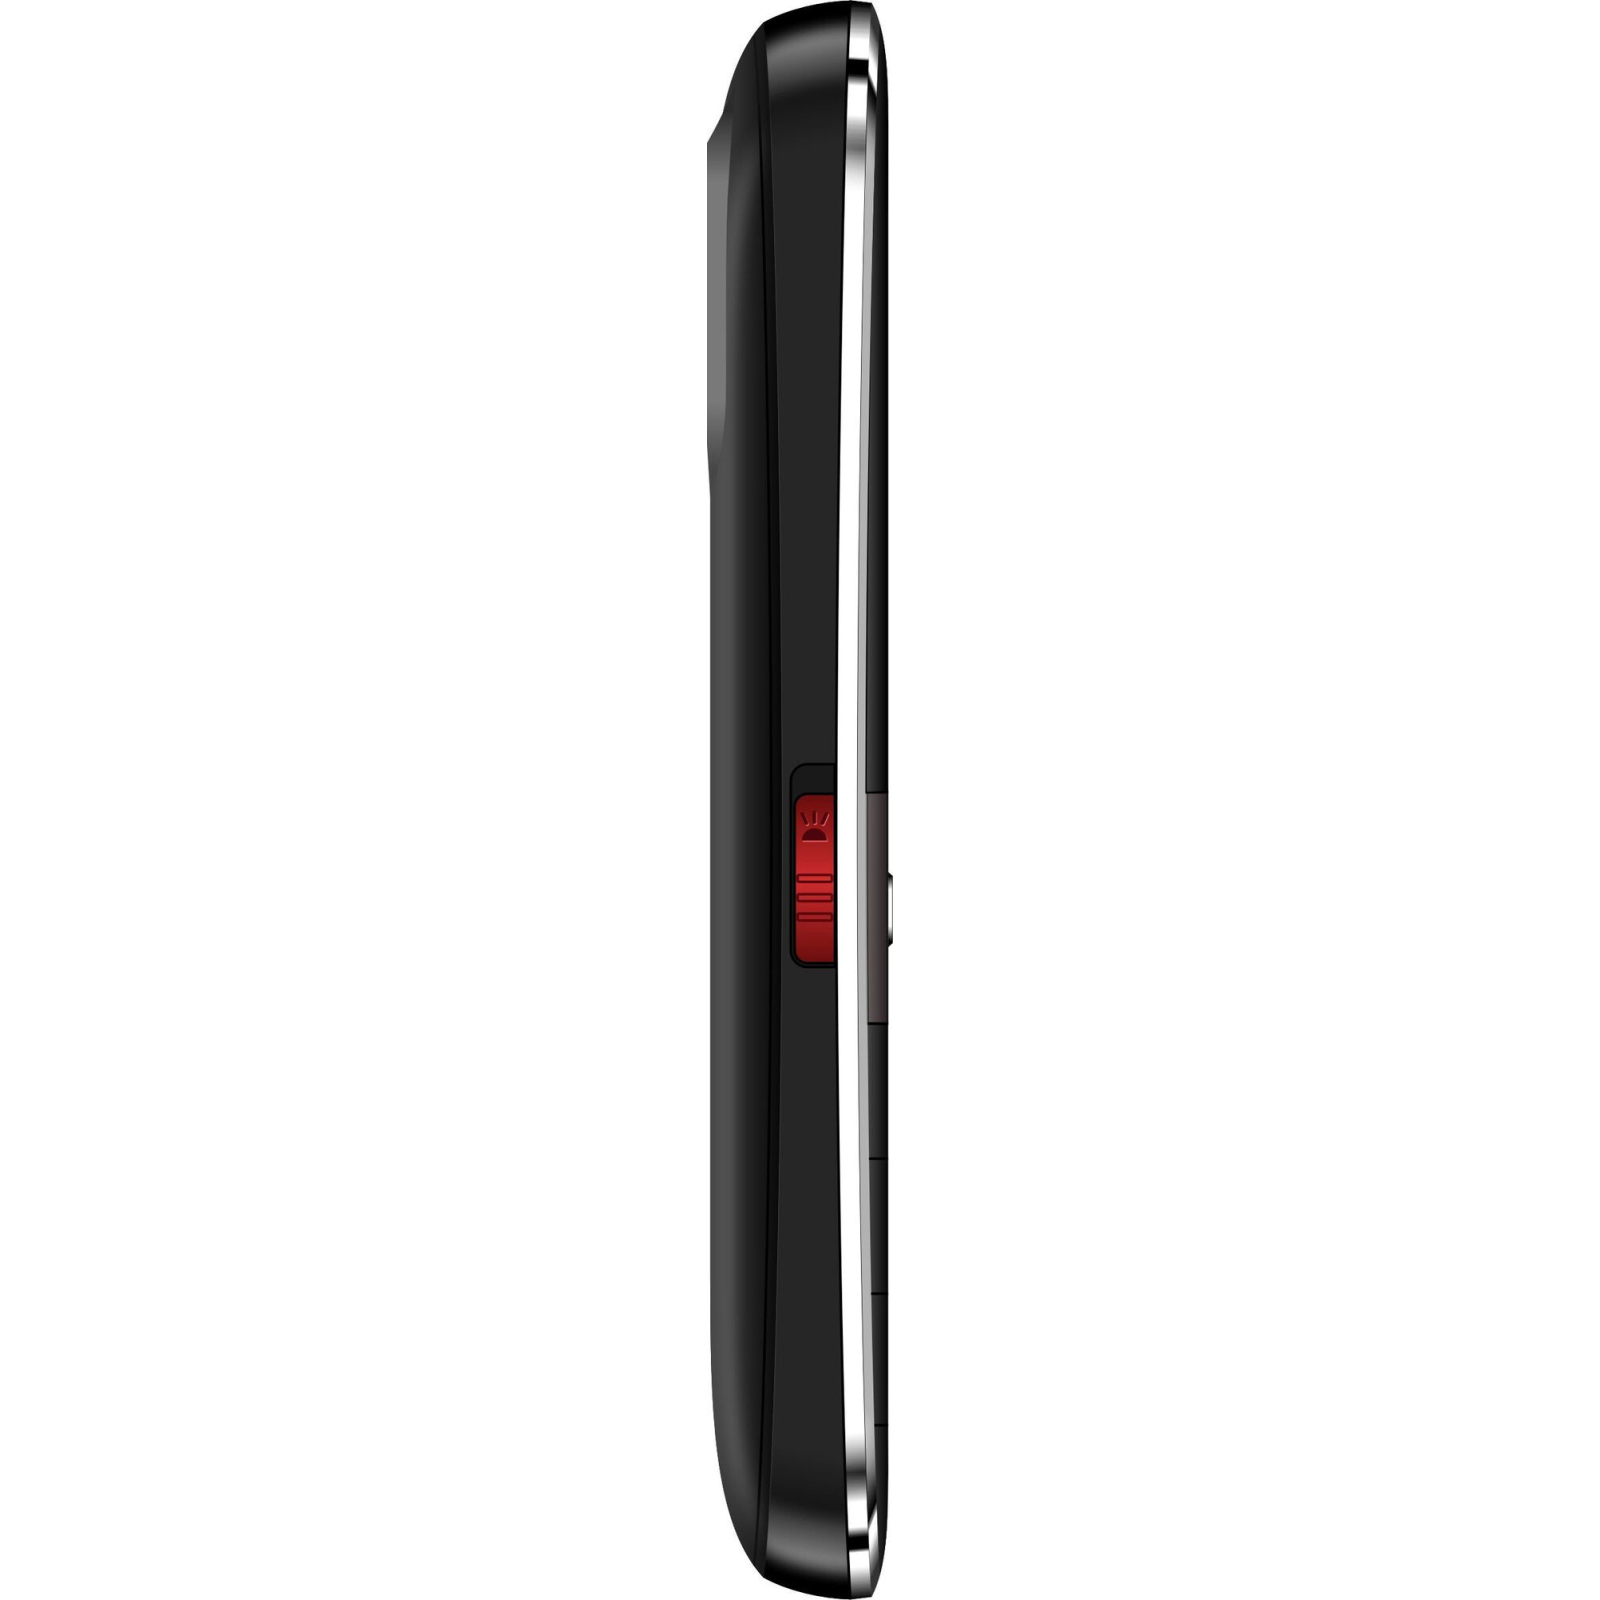 Мобильный телефон Nomi i220 Red изображение 5